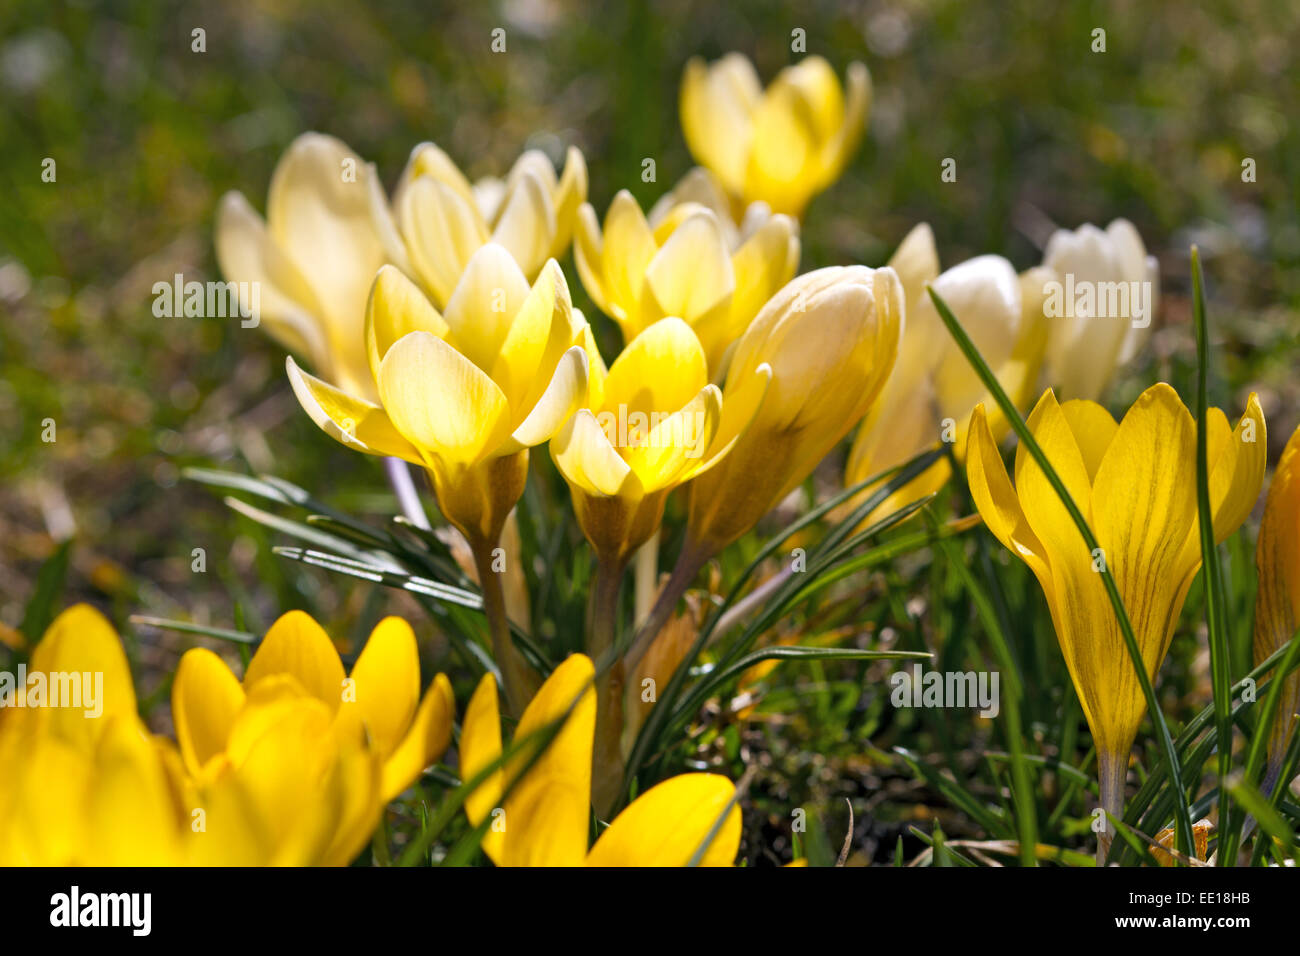 Frühlingsboten, blühende Krokusse, Crocus Foto Stock